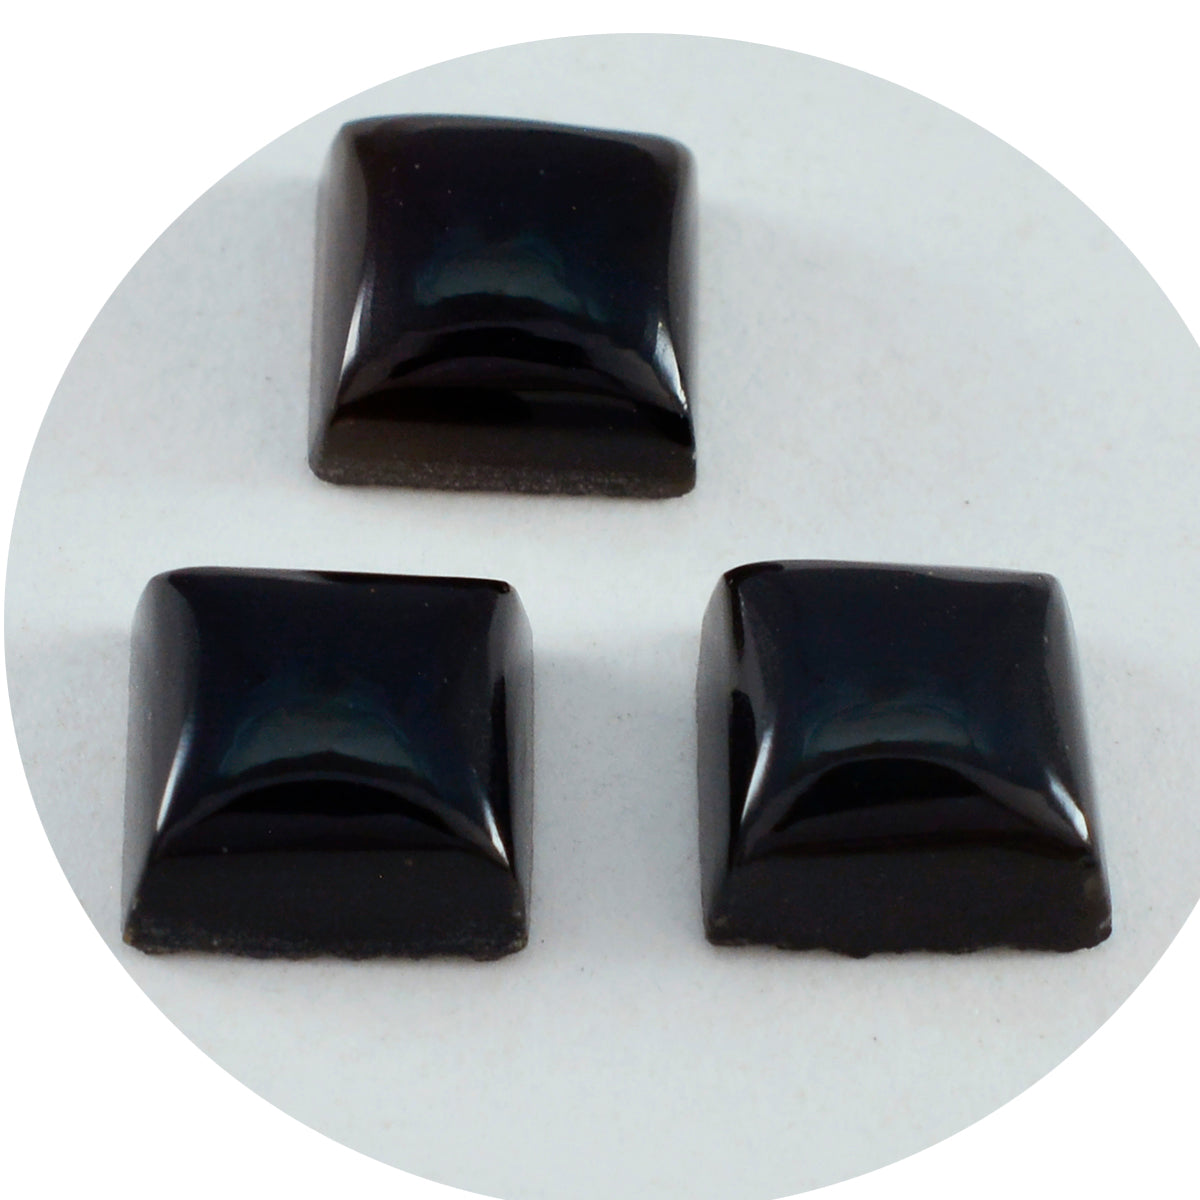 Riyogems 1 pieza cabujón de ónix negro 15x15mm forma cuadrada belleza calidad gema suelta